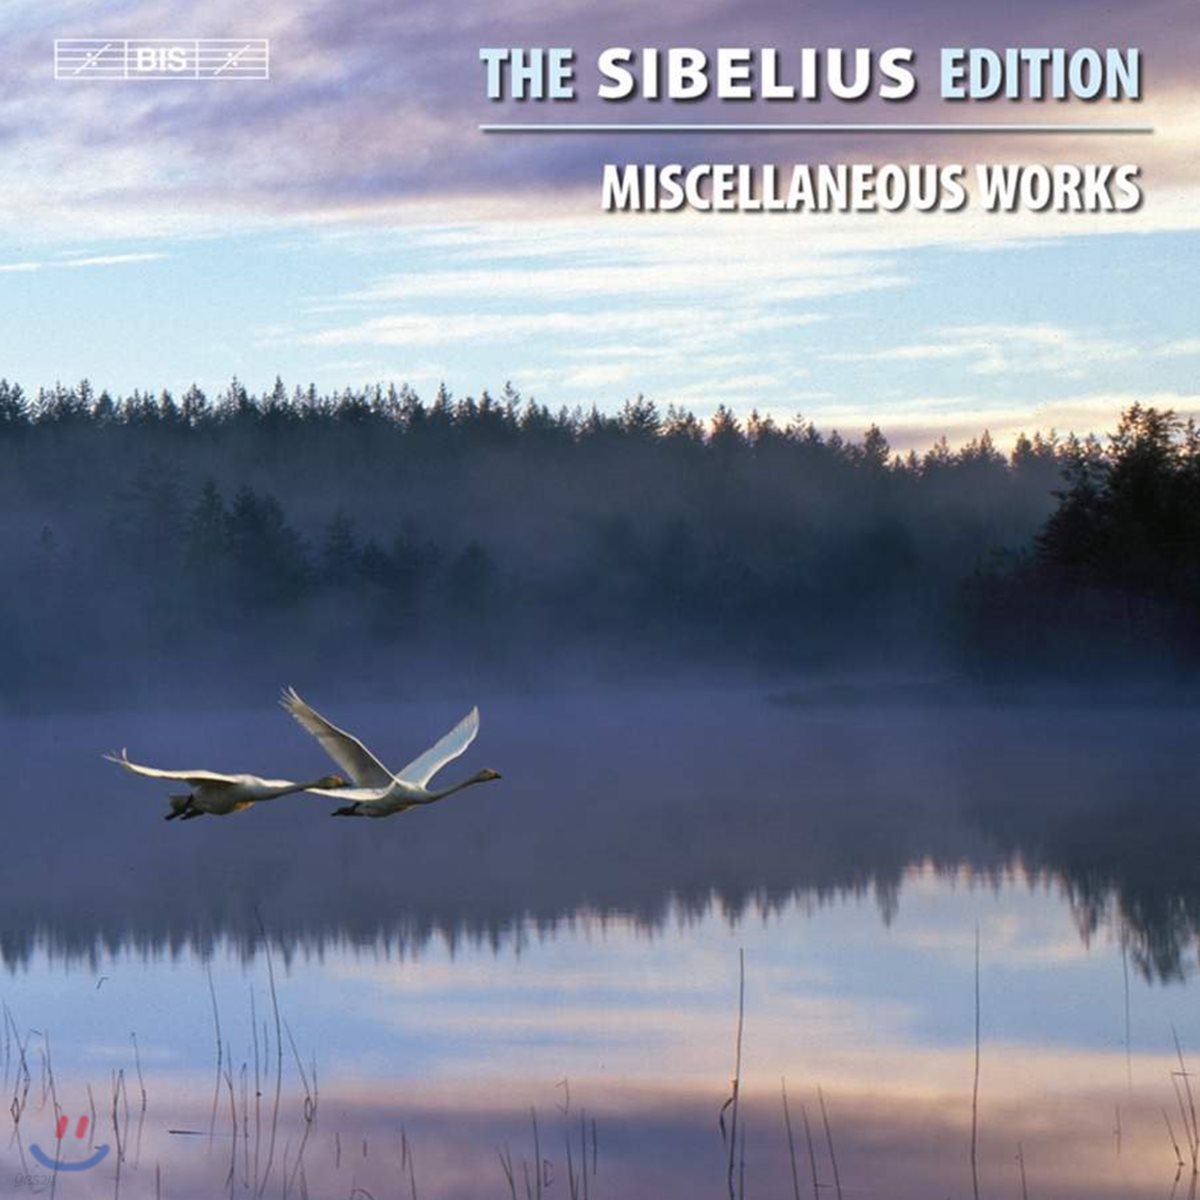 시벨리우스 에디션 13집: BIS 시벨리우스 작품 전곡 에디션 완결편 (Sibelius: Edition Vol. 13 - Miscellaneous Works)